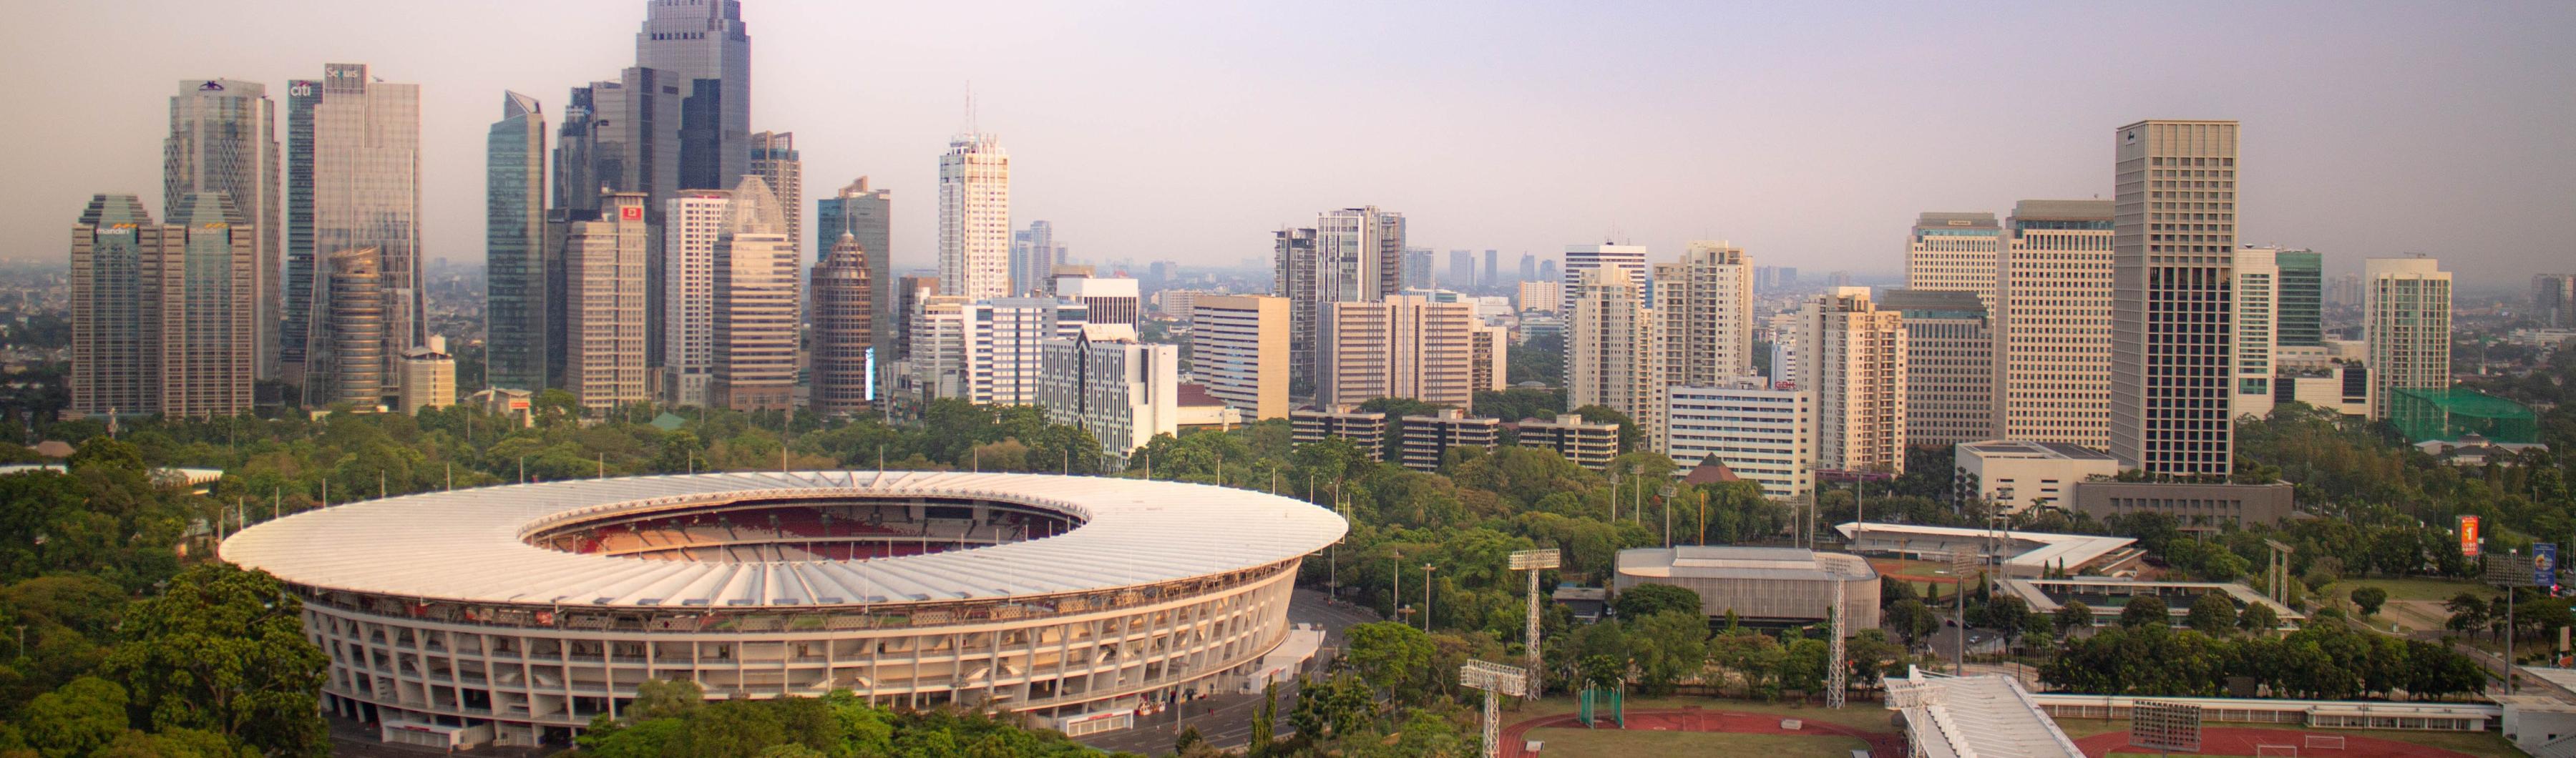 Pemandangan Stadion Gelora Bung Karno di Jakarta yang dikelilingi pepohonan dan cakrawala kota